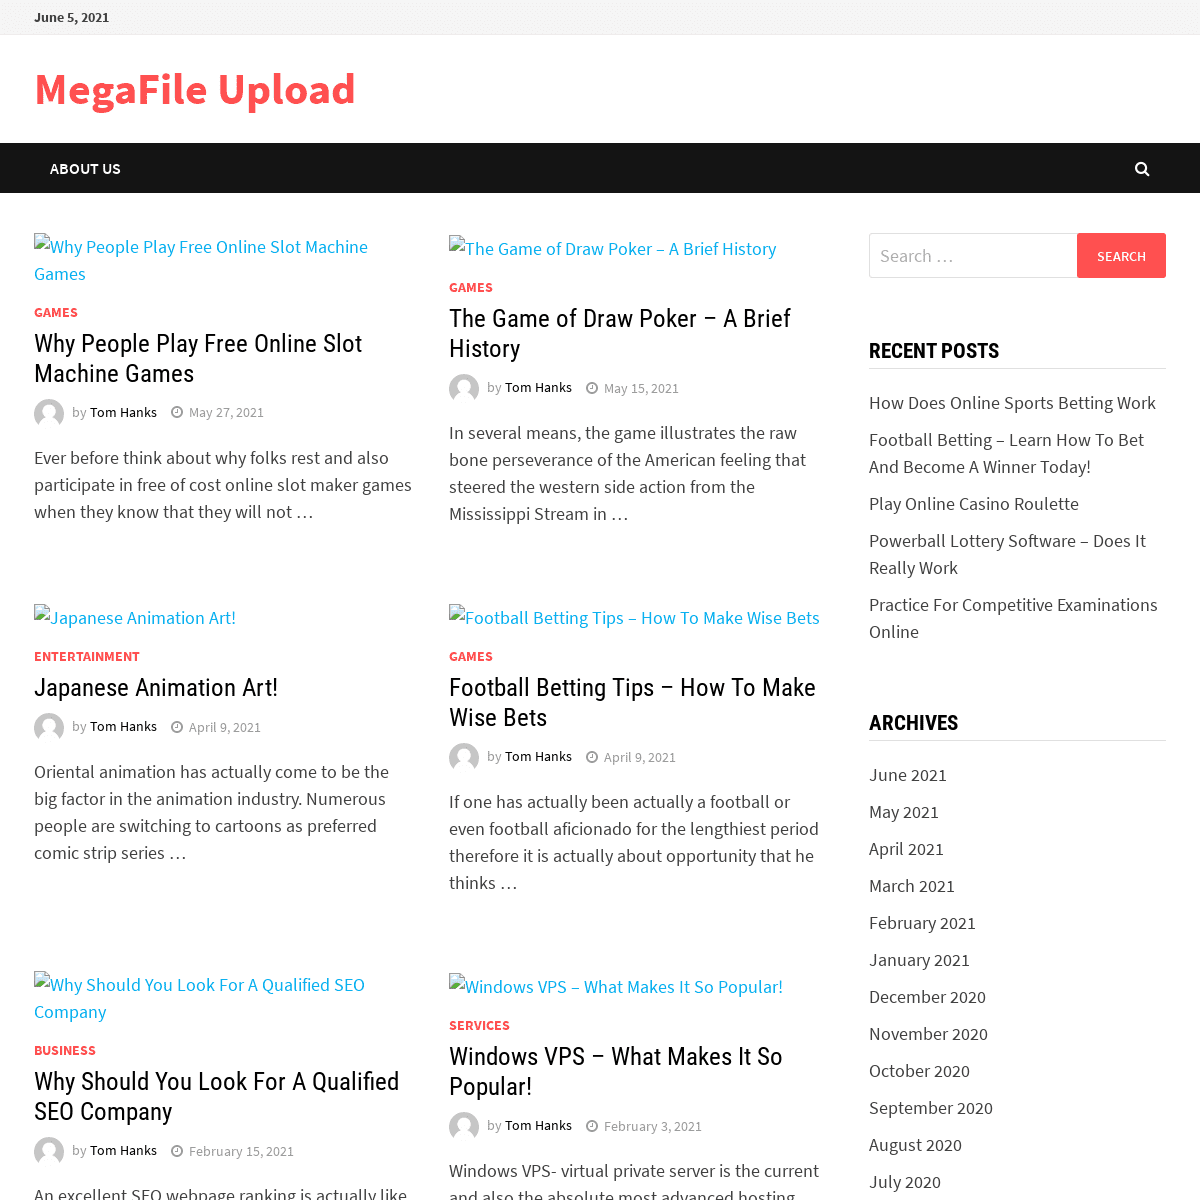 A complete backup of https://megafileupload.com